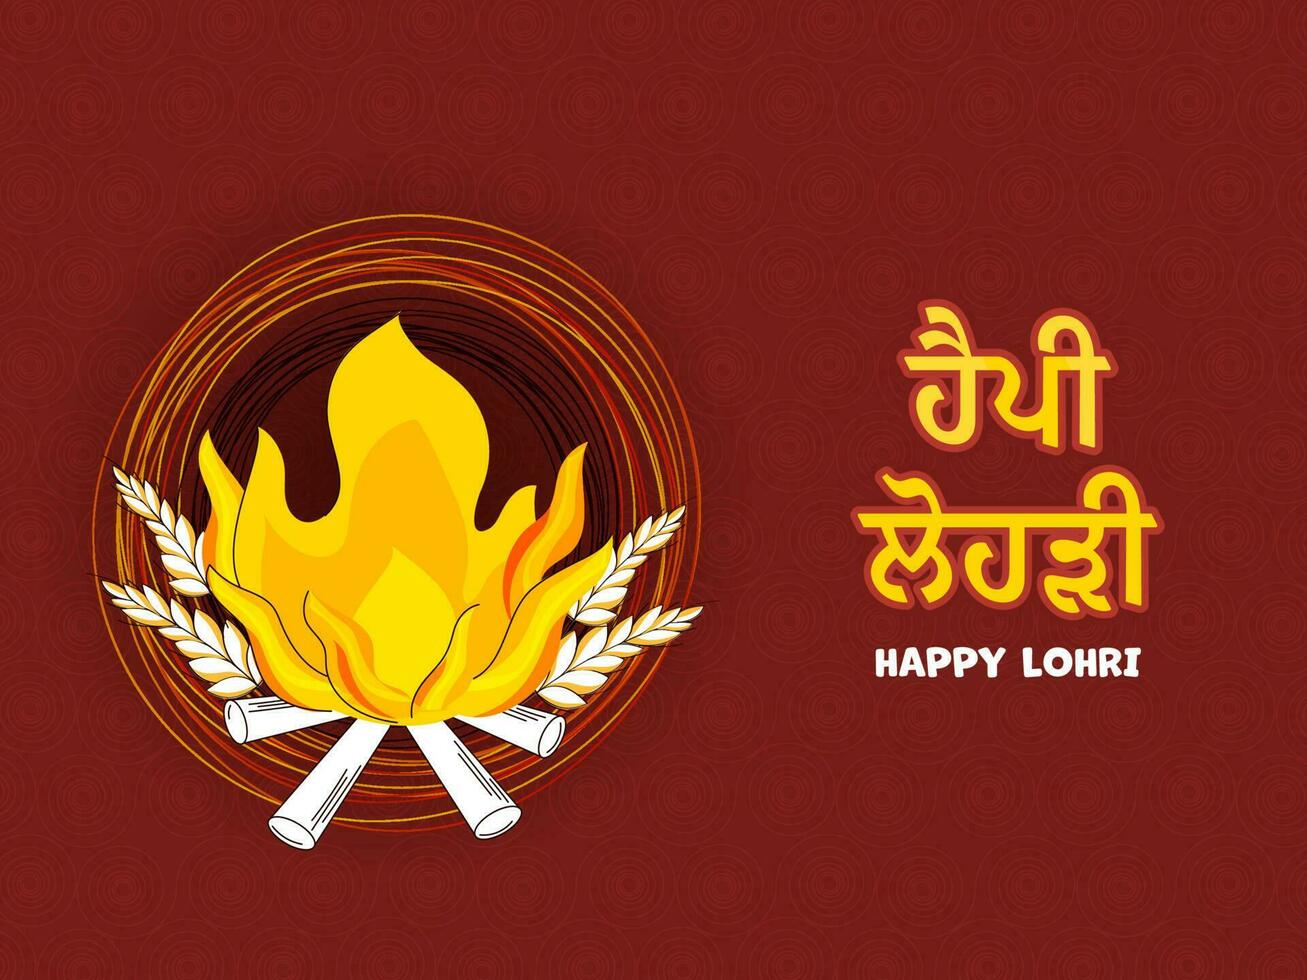 Aufkleber Stil glücklich lohri Schriftart geschrieben im Punjabi Sprache mit Lagerfeuer, Weizen Ohr auf braun Strudel Muster Hintergrund. vektor